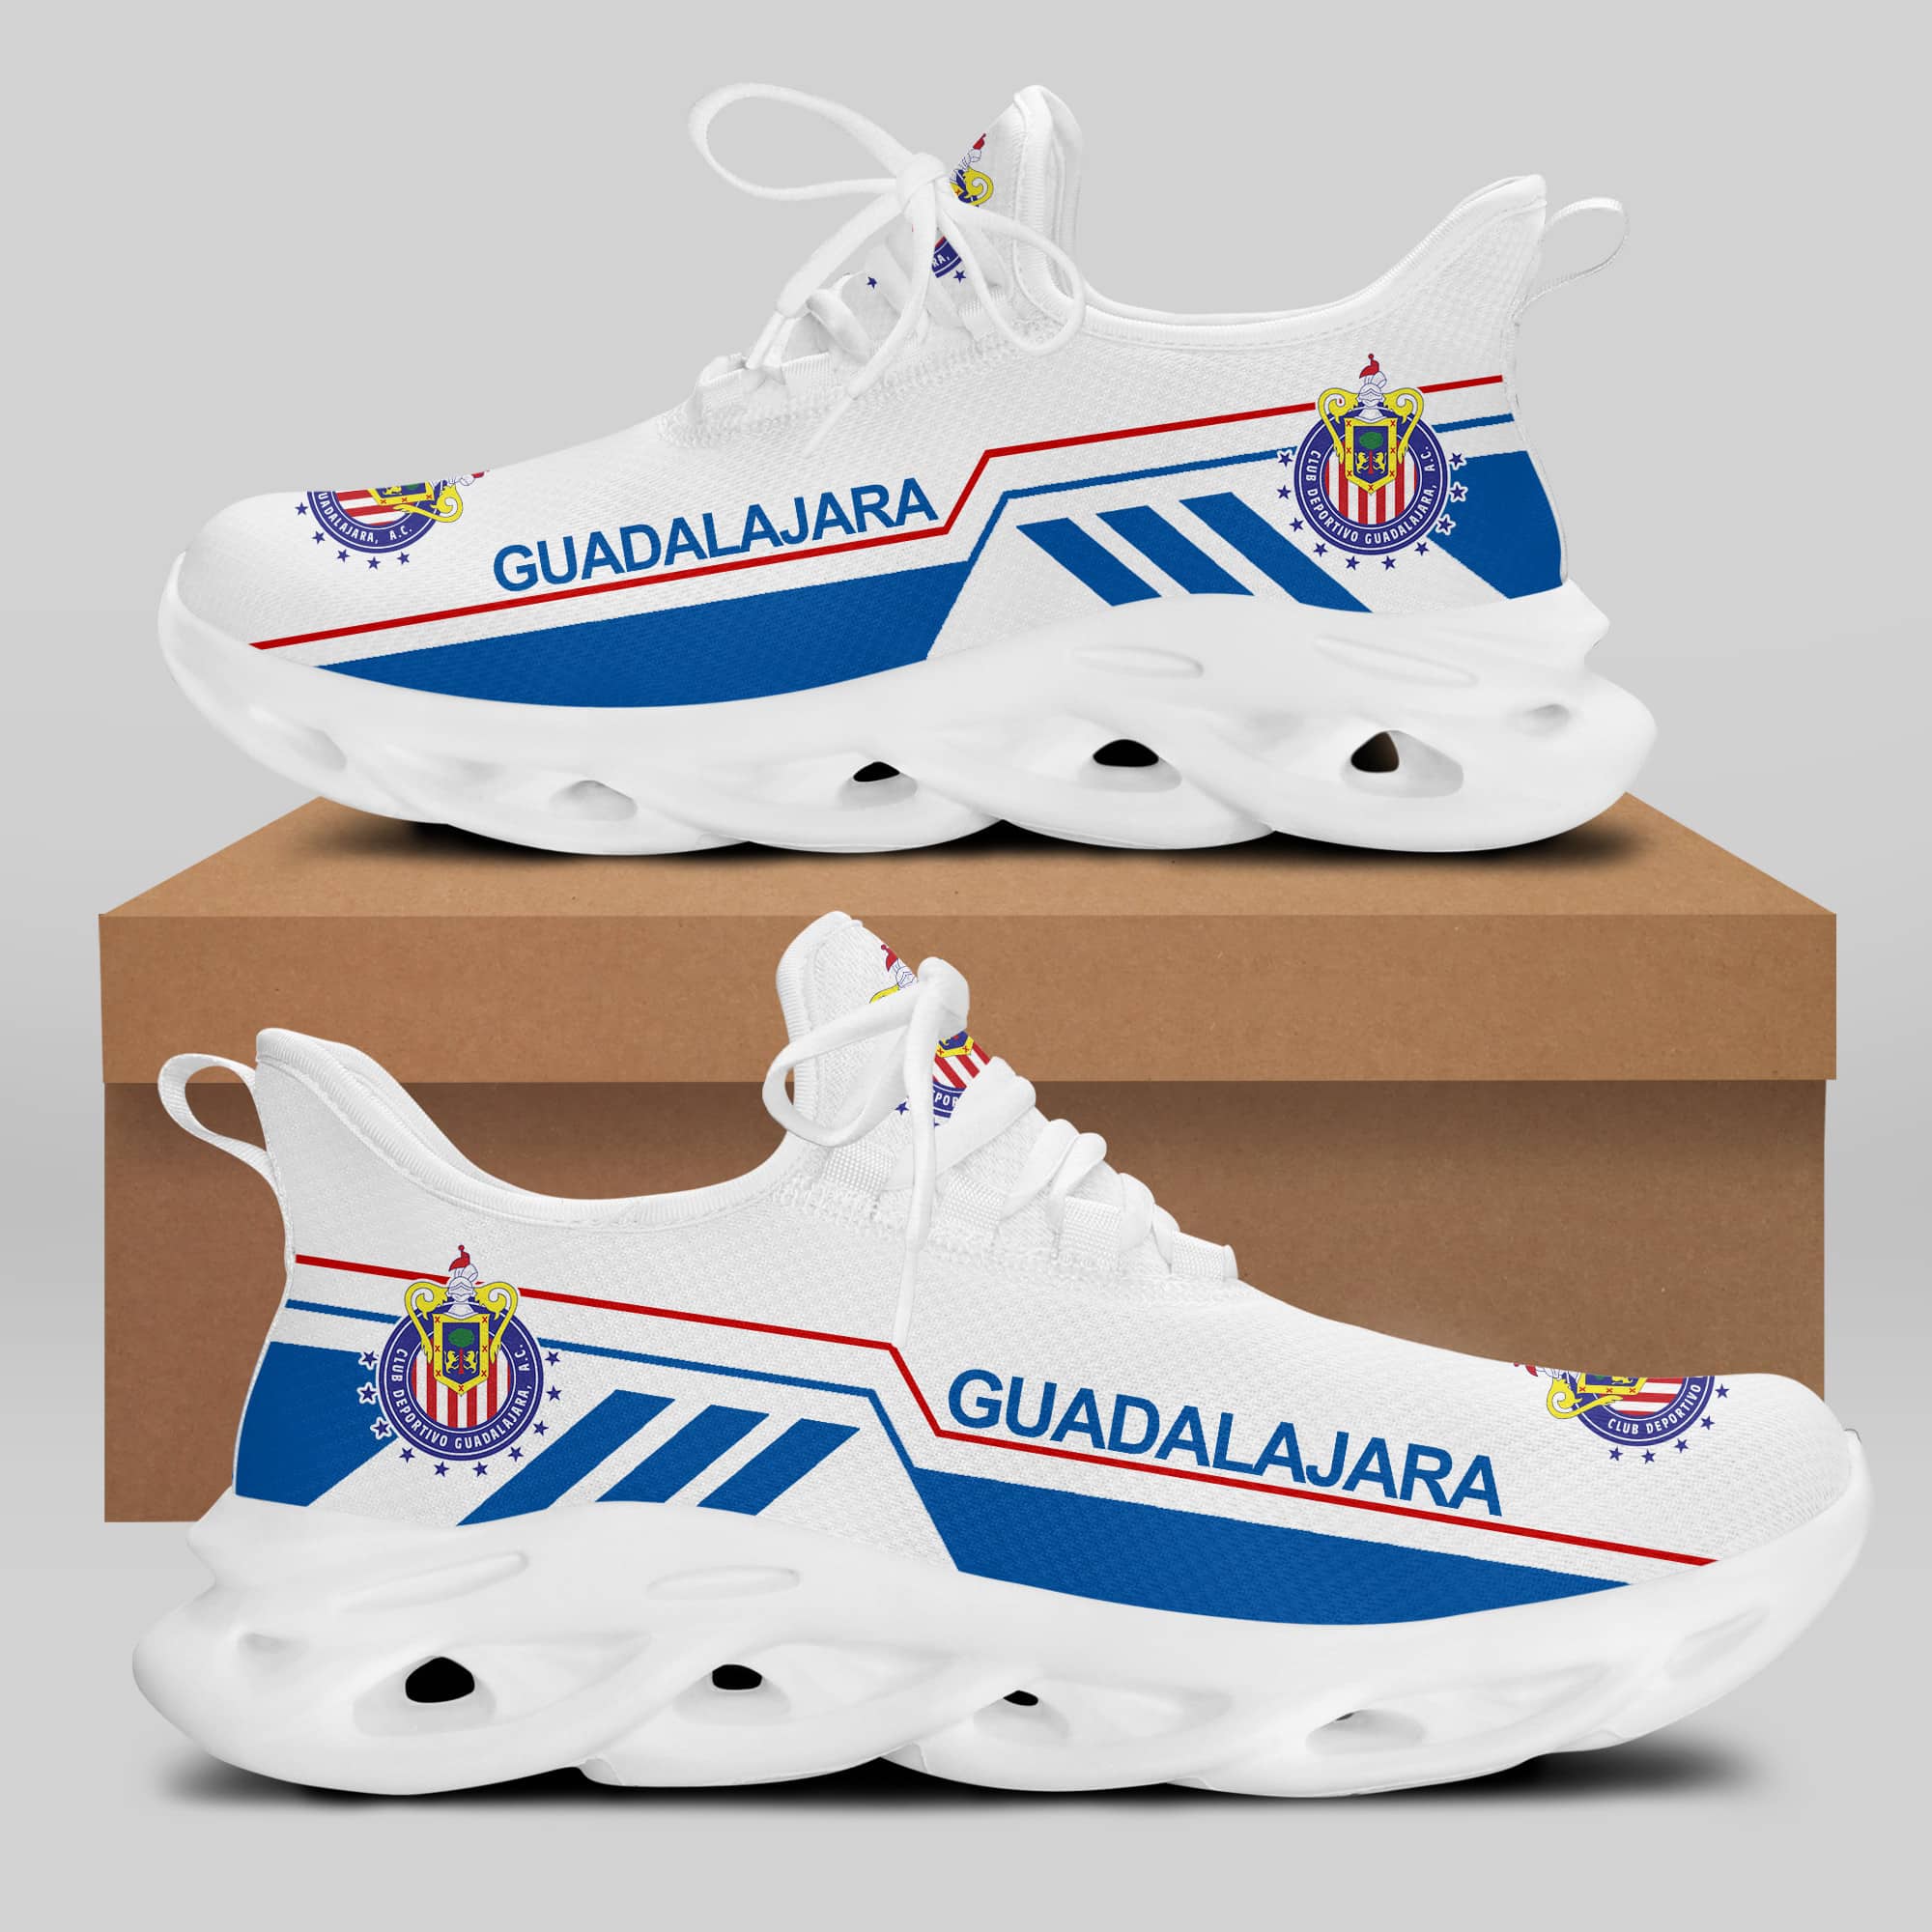 C.D. Guadalajara Running Shoes Max Soul Shoes Sneakers Ver 11 1